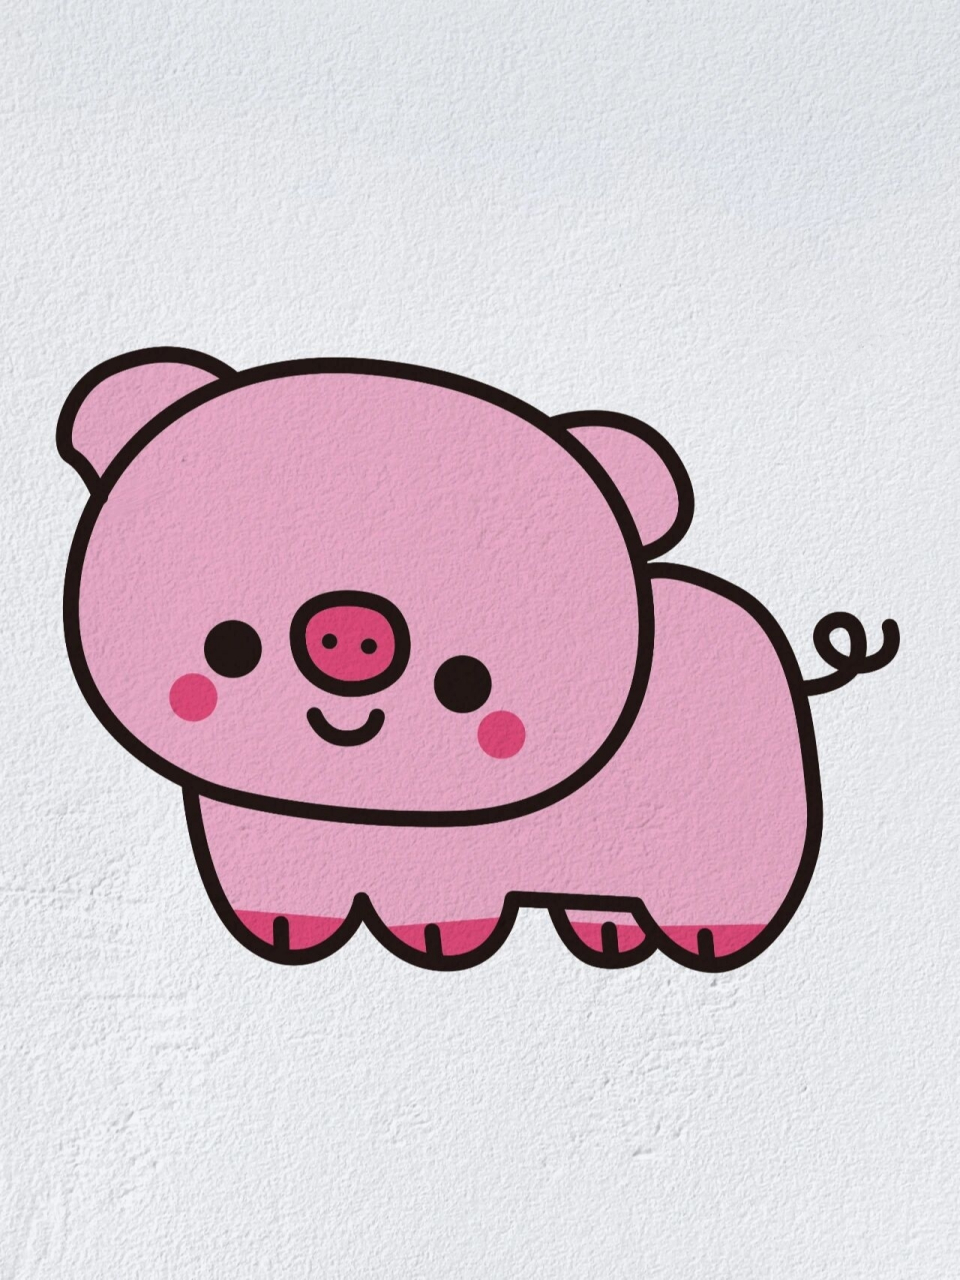 彩色动物简笔画小猪图片